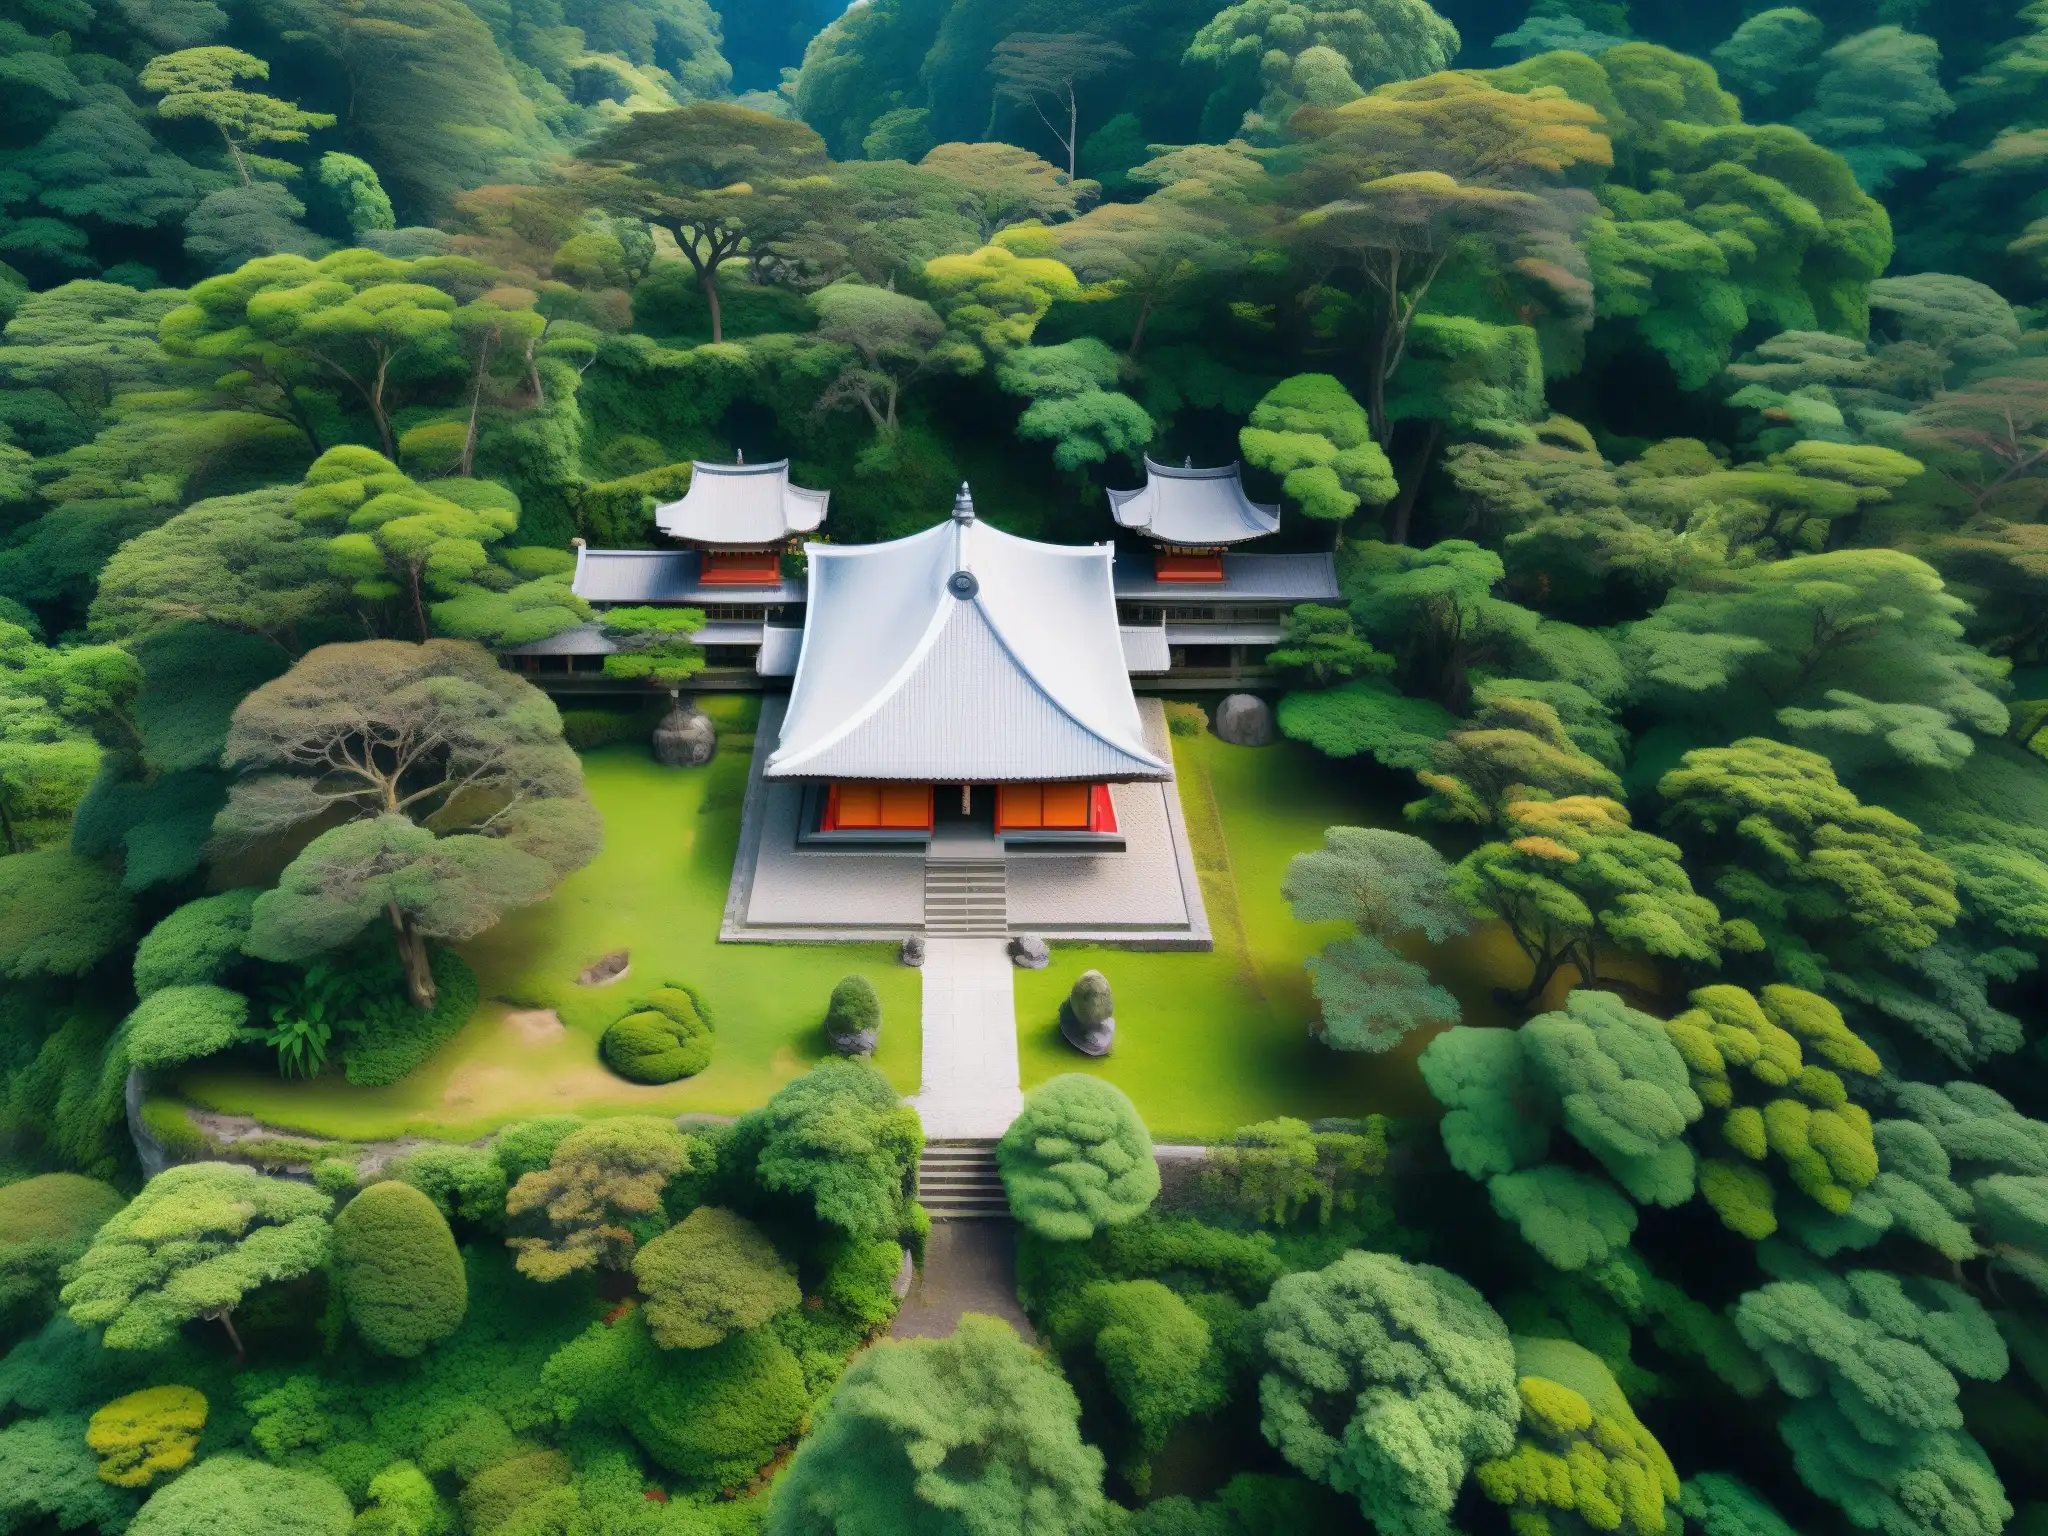 Vista aérea de un templo japonés antiguo y enmarañado en un bosque denso, con un dron moderno capturando la escena